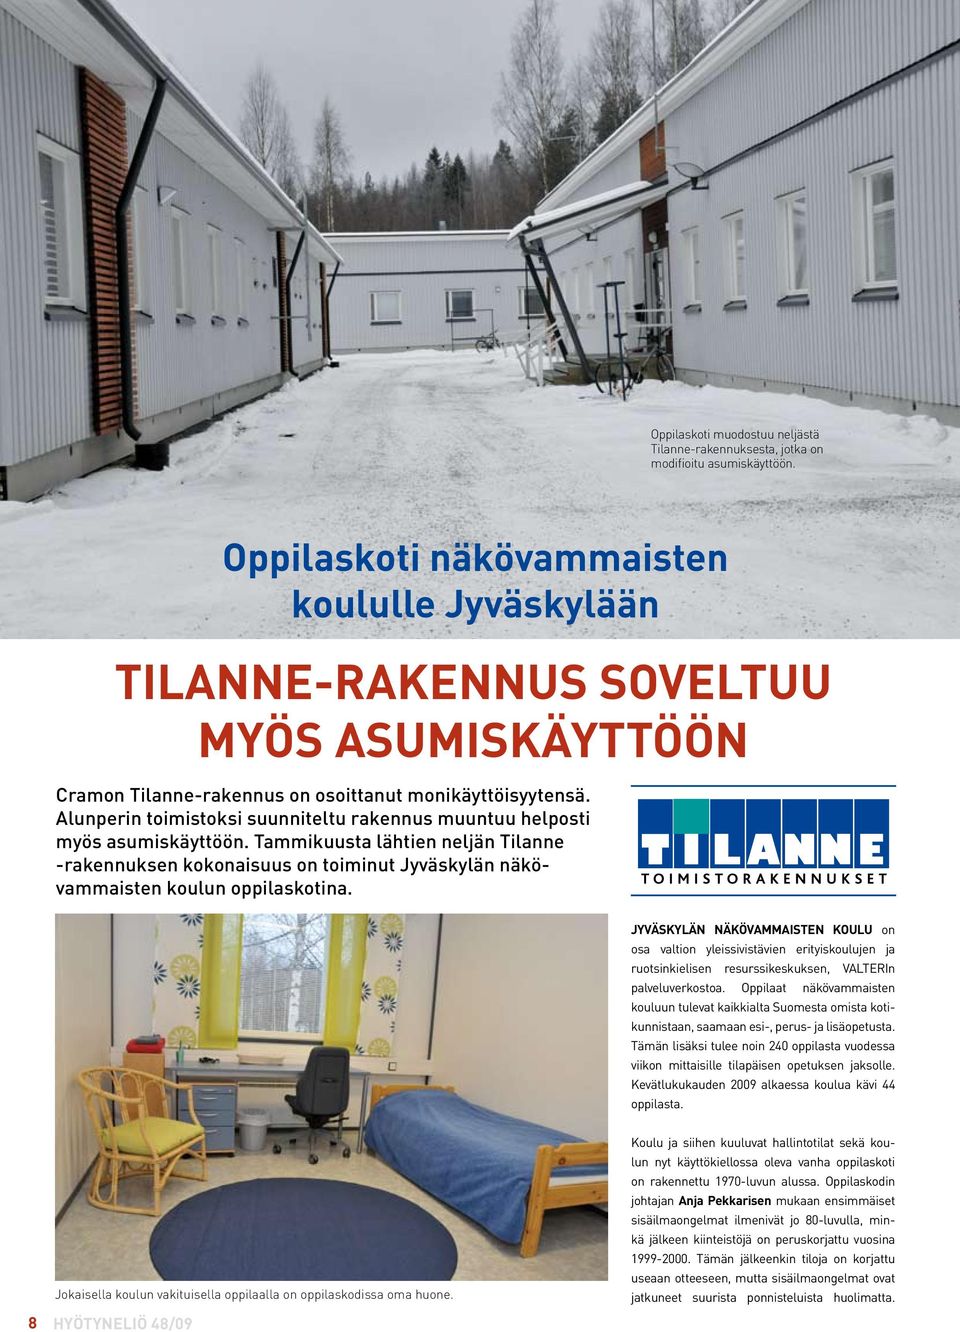 Alunperin toimistoksi suunniteltu rakennus muuntuu helposti myös asumiskäyttöön. Tammikuusta lähtien neljän Tilanne -rakennuksen kokonaisuus on toiminut Jyväskylän näkövammaisten koulun oppilaskotina.